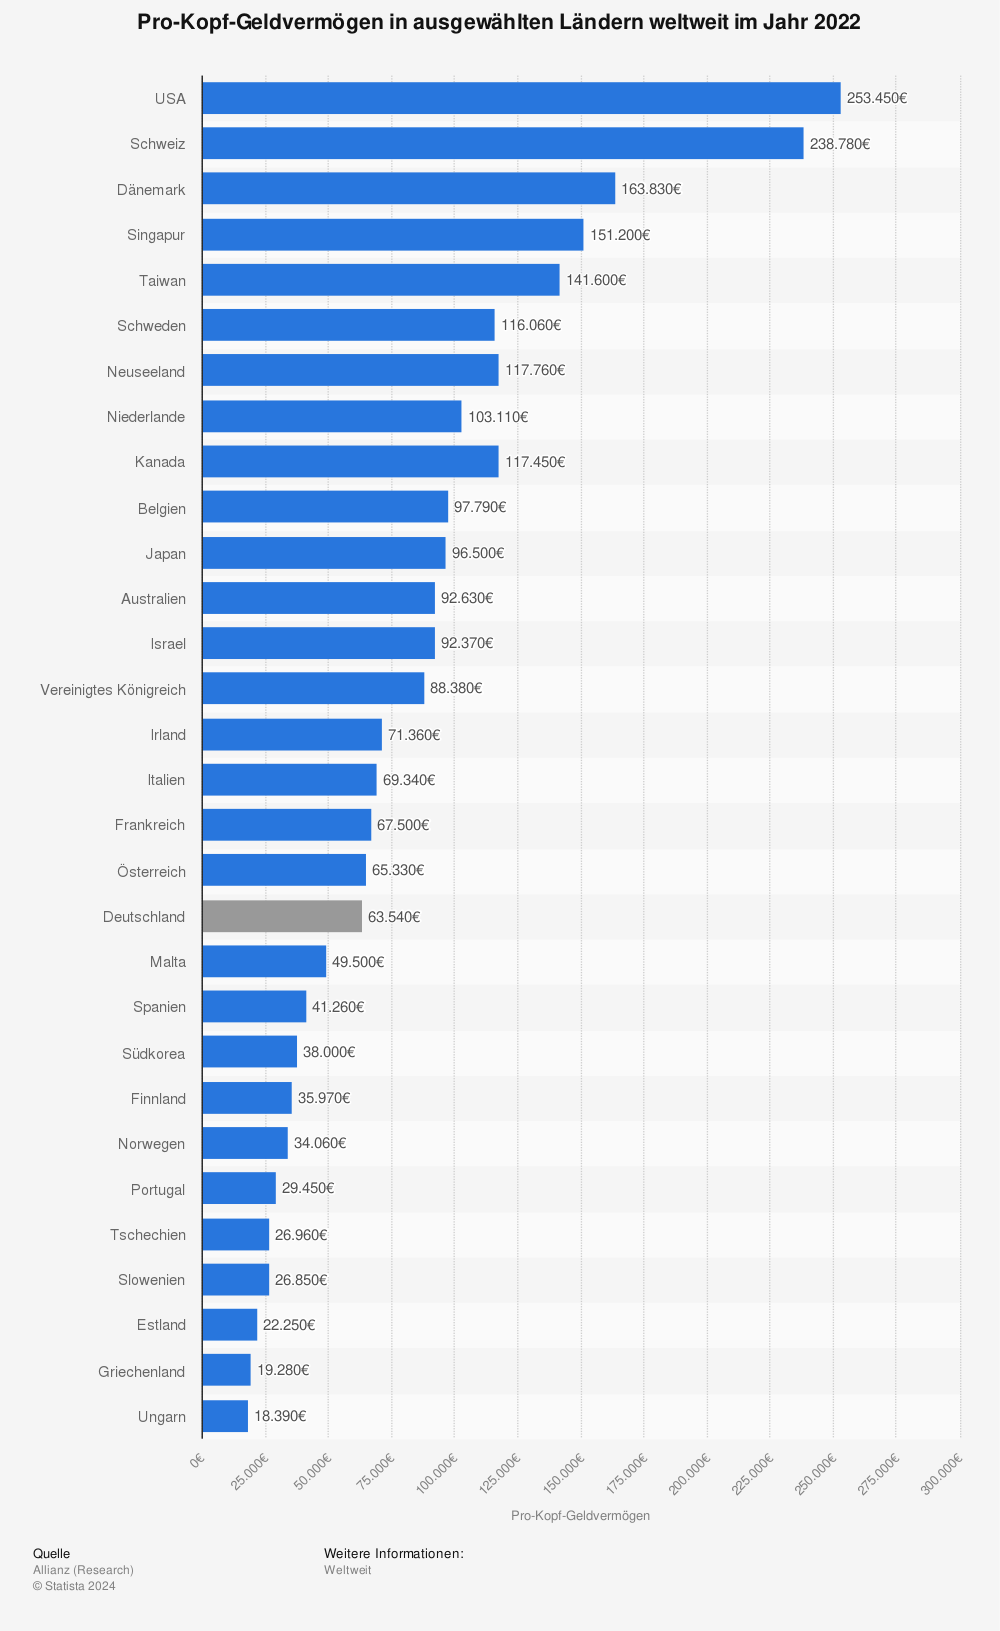 Statistik: Geldvermögen pro Kopf der Bevölkerung in ausgewählten Ländern weltweit im Jahr 2018 (in Euro) | Statista